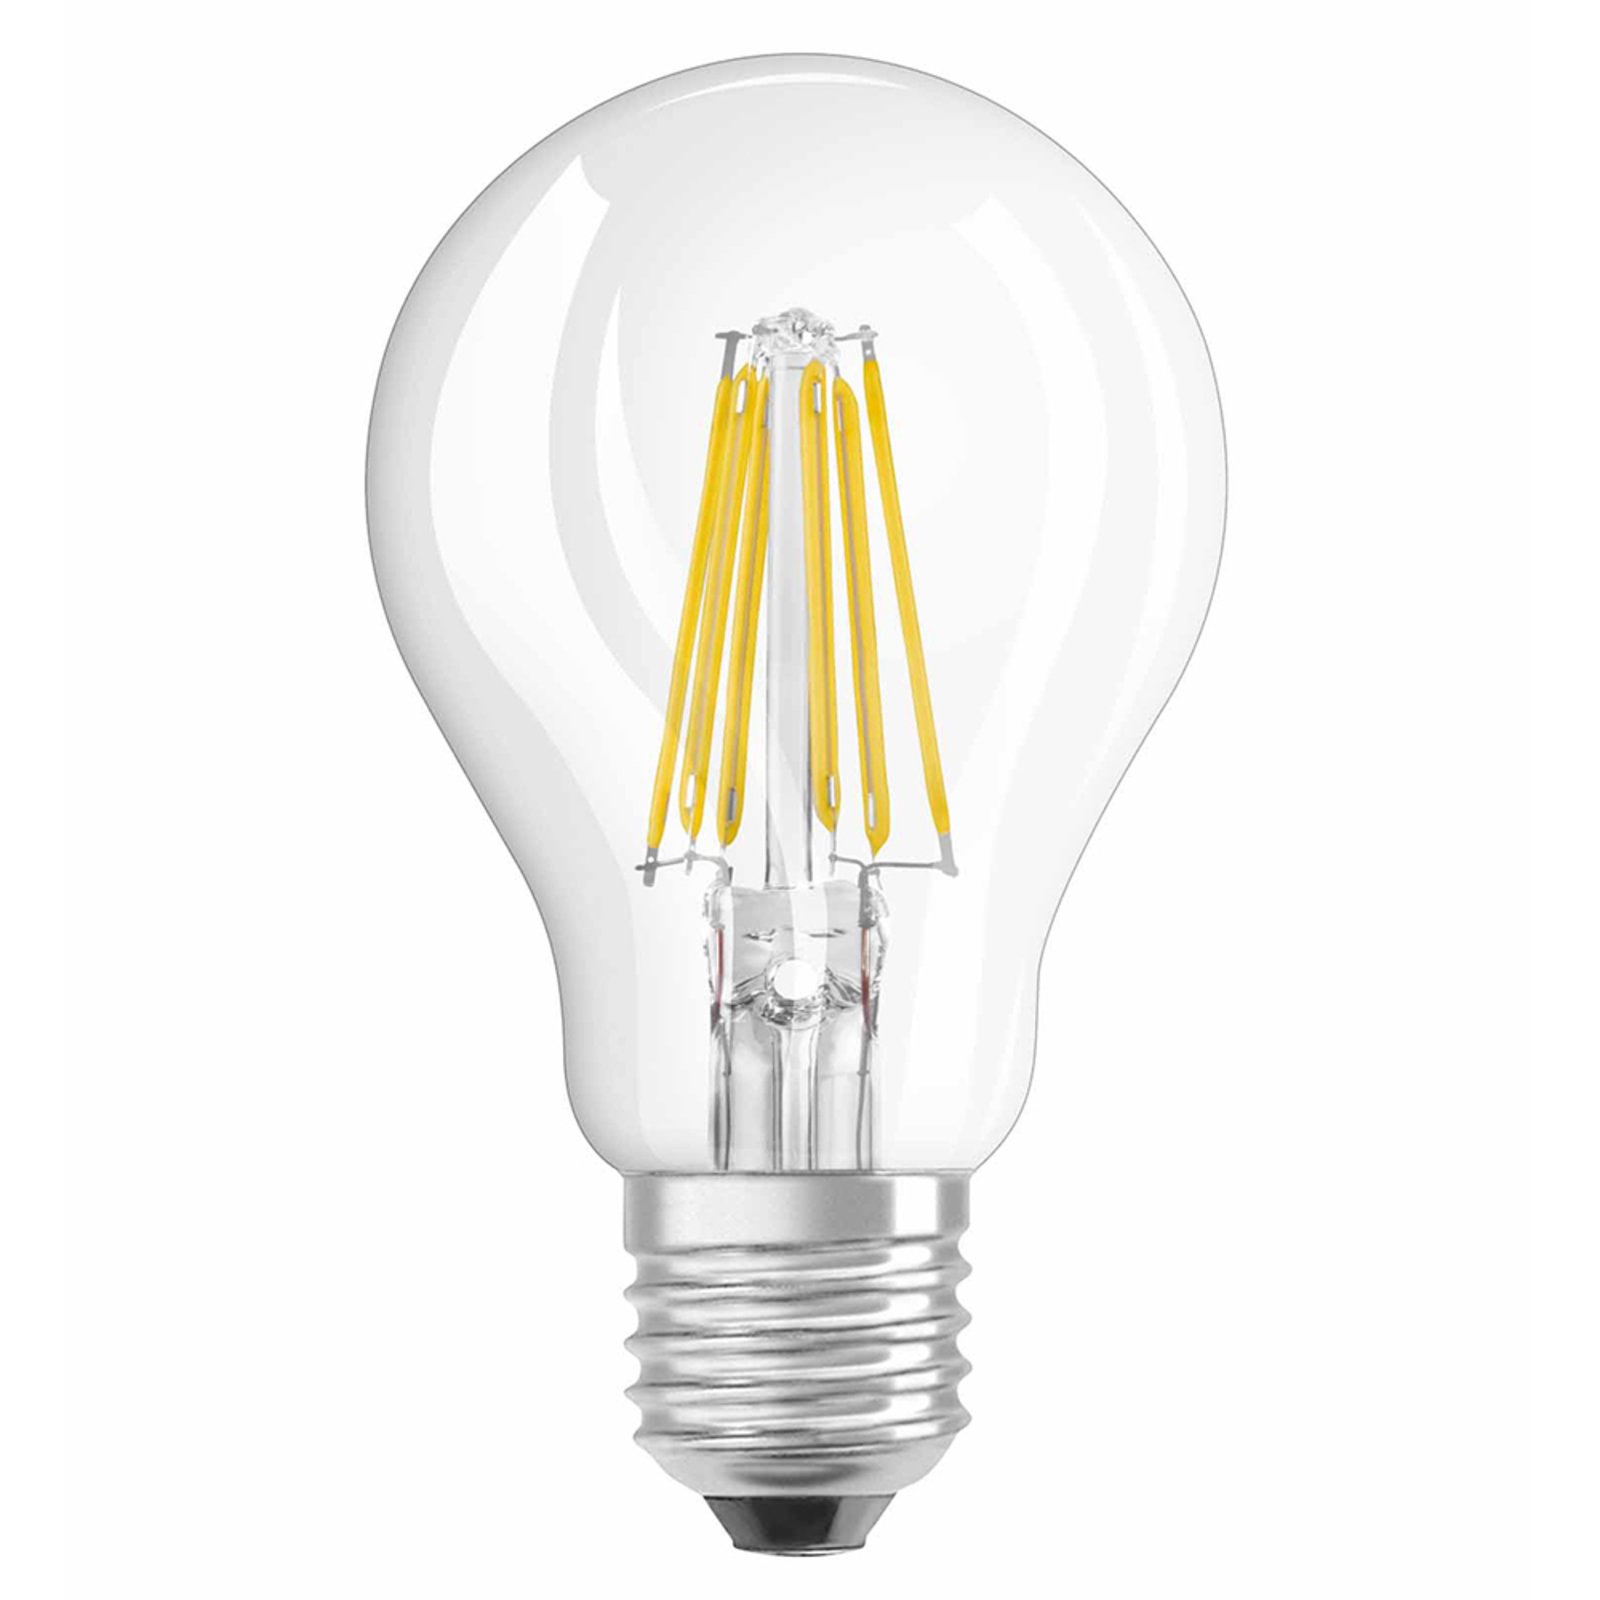 OSRAM E27 7.5 W 827 LED bulb filament clear